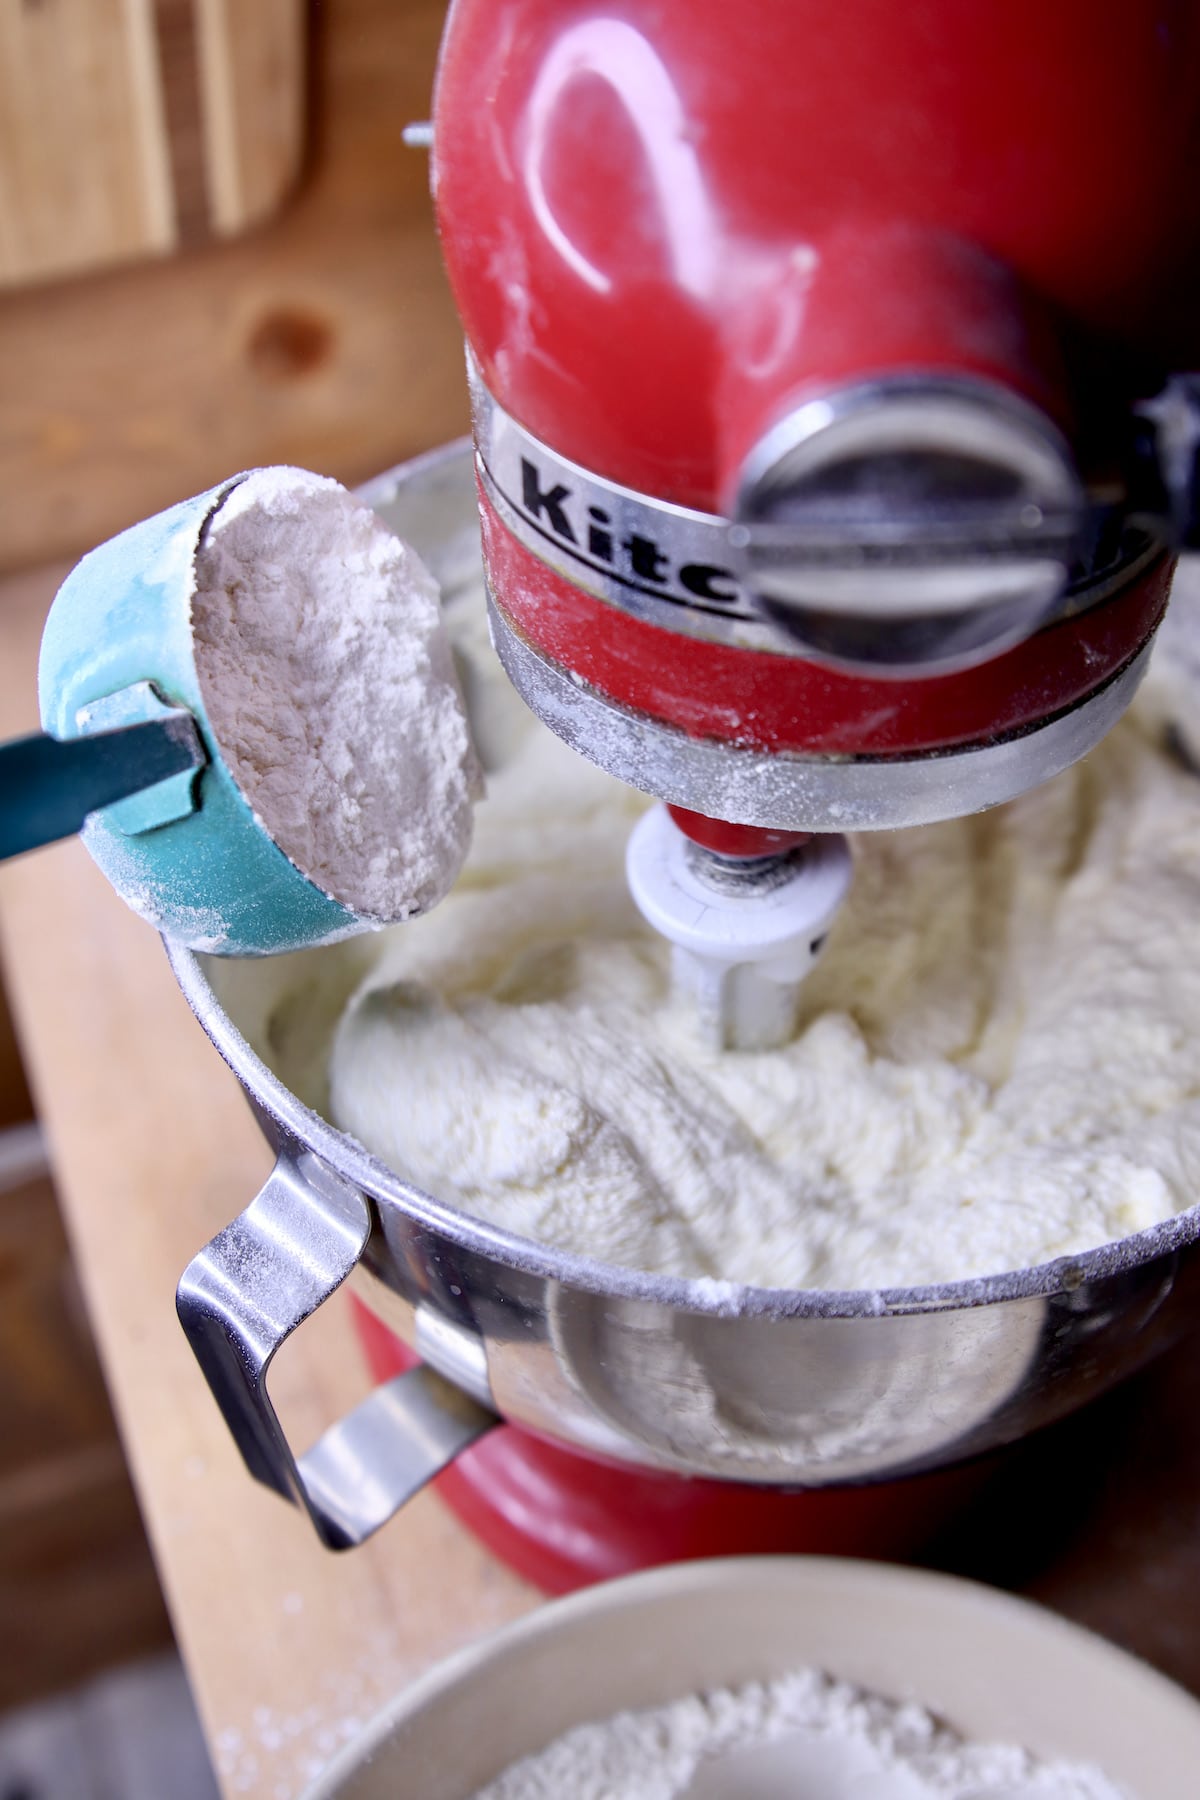 Adding flour to mixer bowl of cake batter using Kitchenaid mixer.